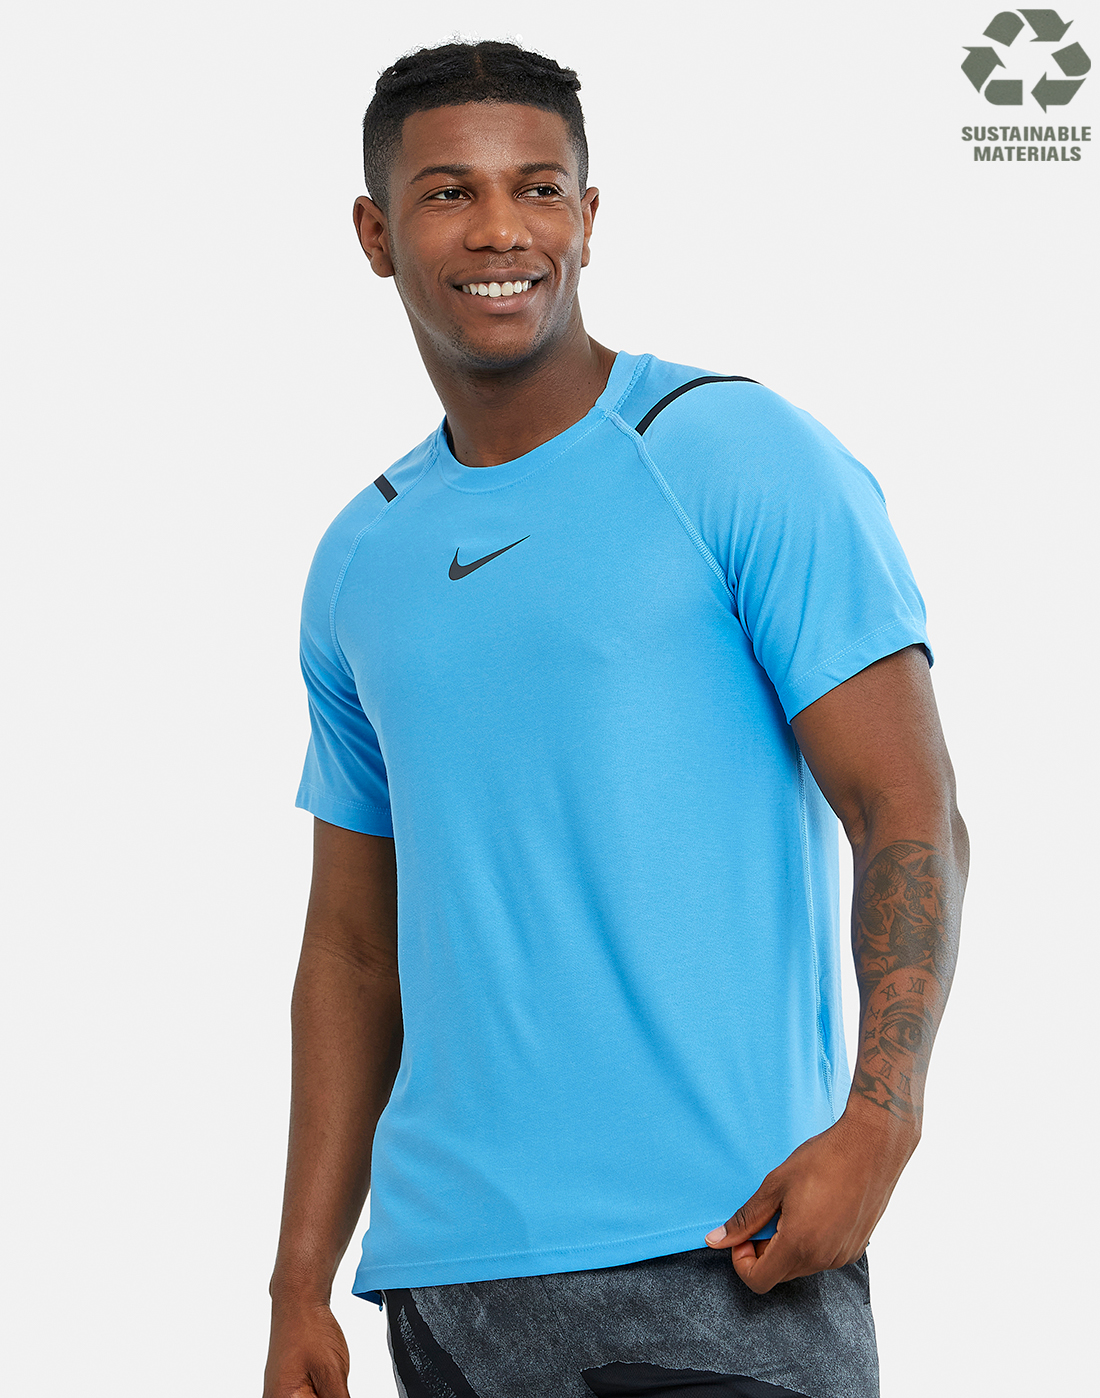 Nike Mens NPC Pro Training T-shirt - Blue | Life Style Sports IE